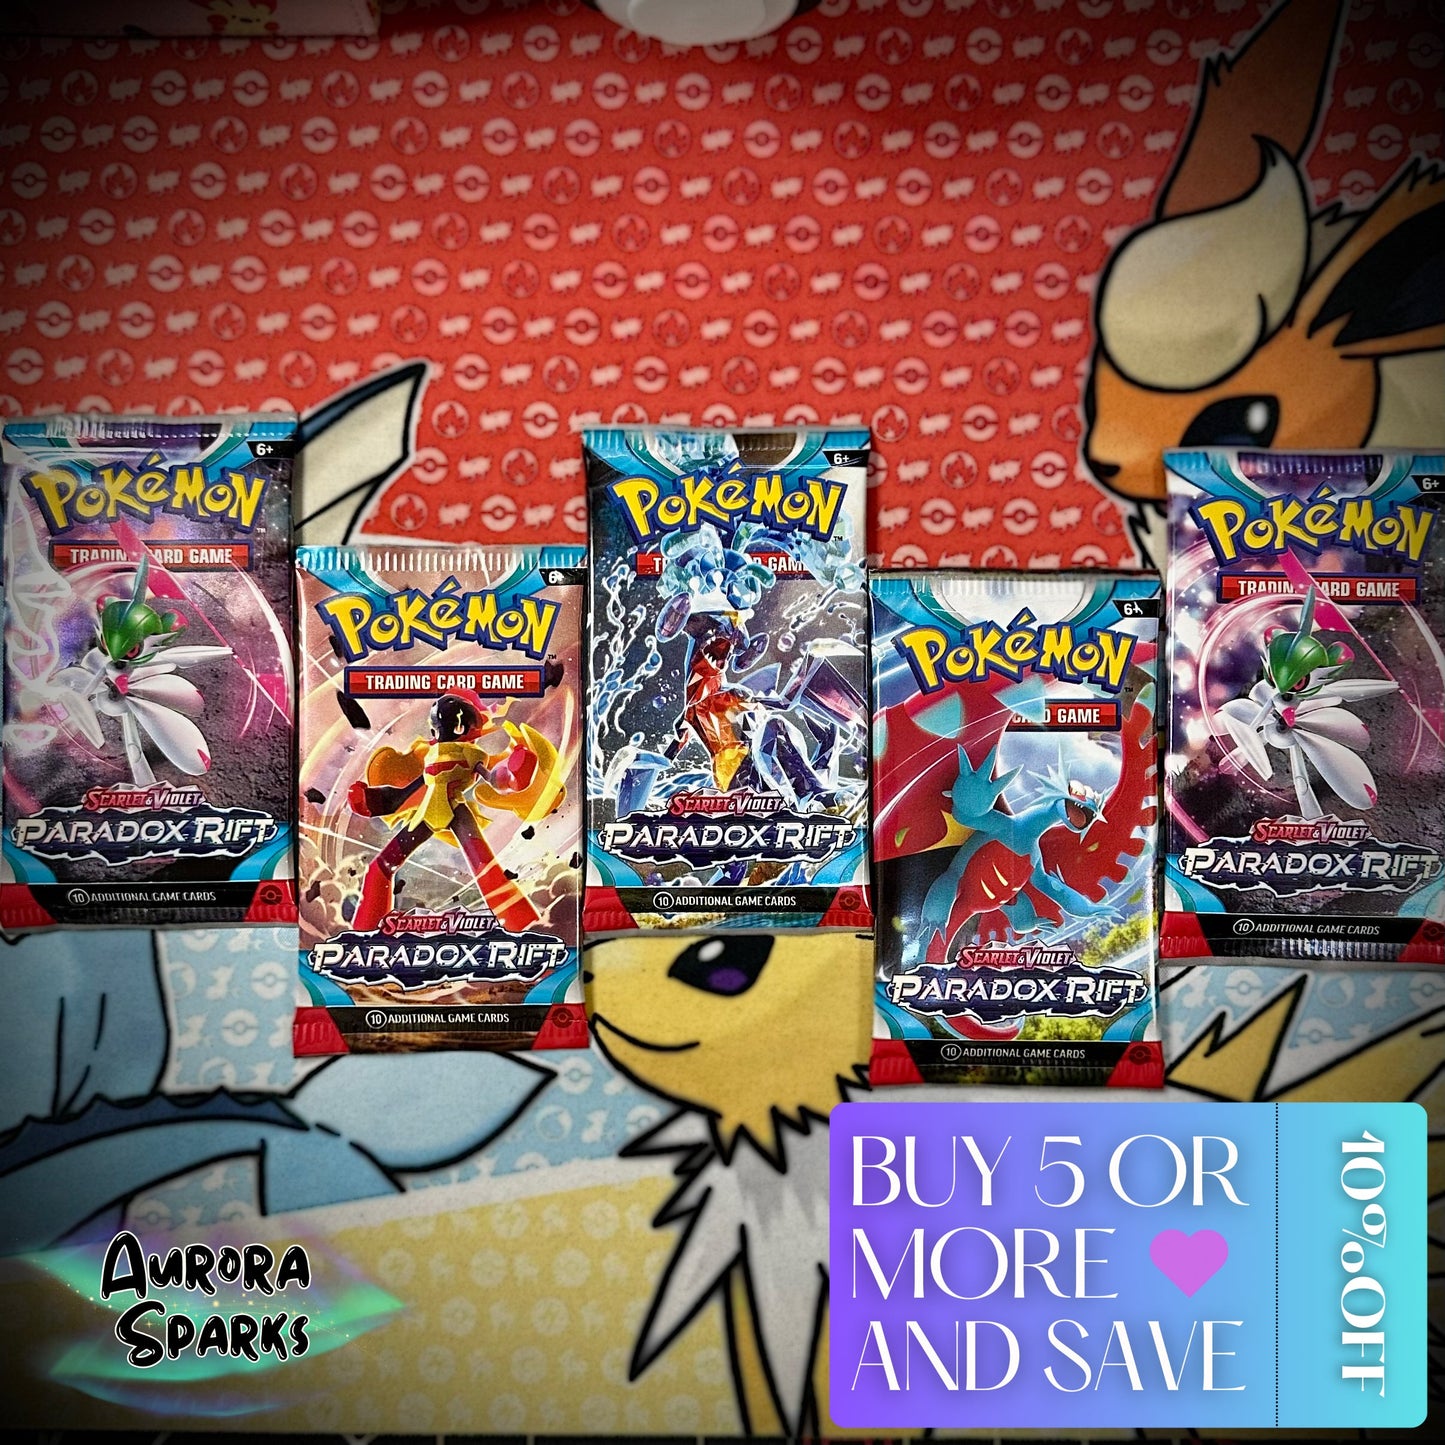 Pokémon TCG: Scarlet & Violet-Paradox Rift Booster Pack (1 Pack) - Aurora Sparks